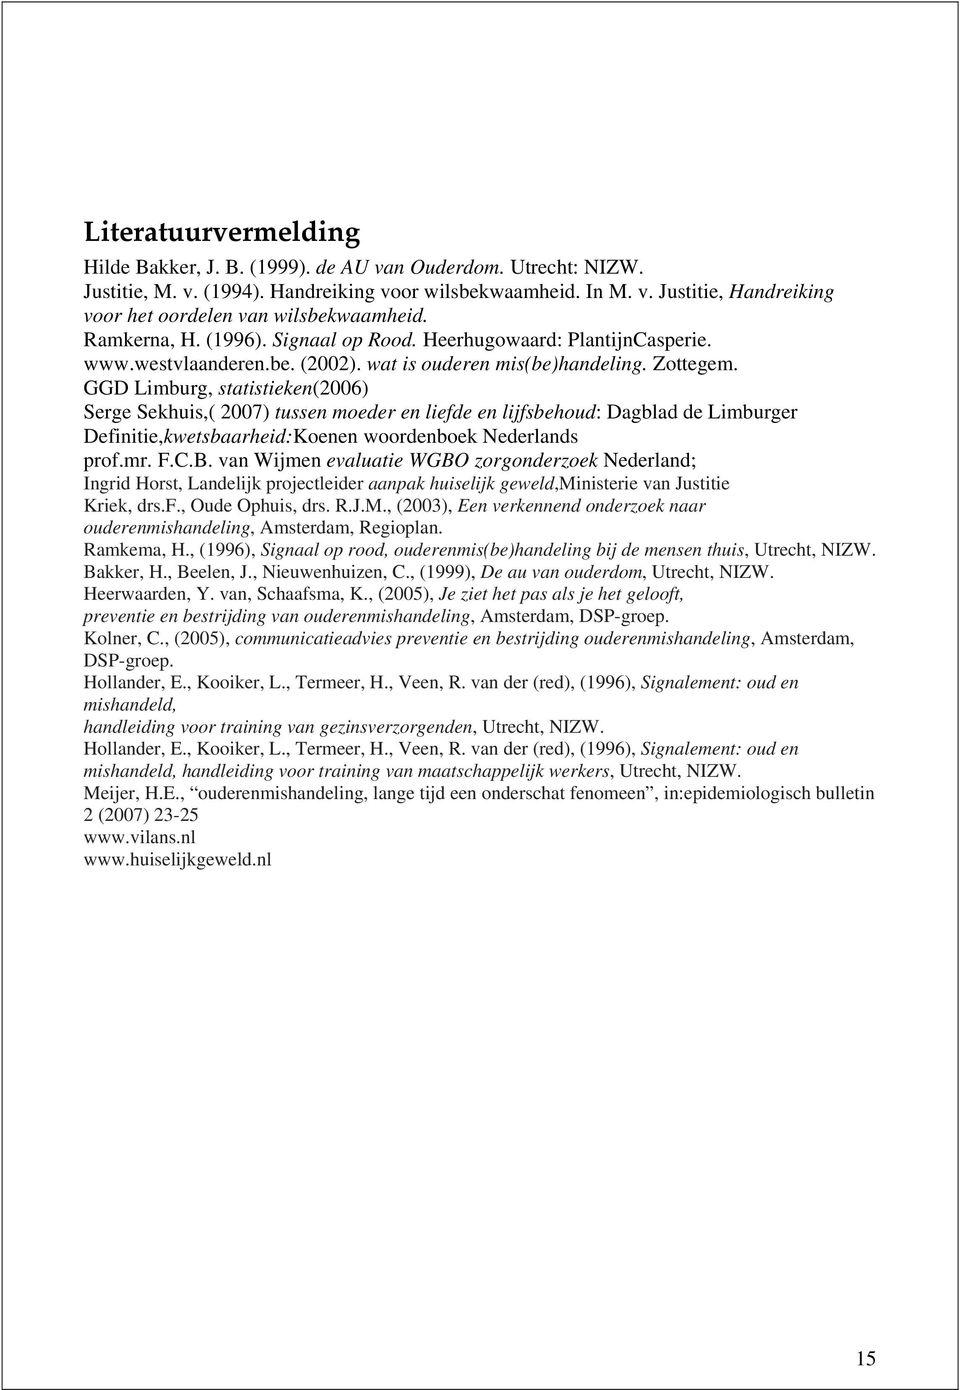 GGD Limburg, statistieken(2006) Serge Sekhuis,( 2007) tussen moeder en liefde en lijfsbehoud: Dagblad de Limburger Definitie,kwetsbaarheid:Koenen woordenboek Nederlands prof.mr. F.C.B.